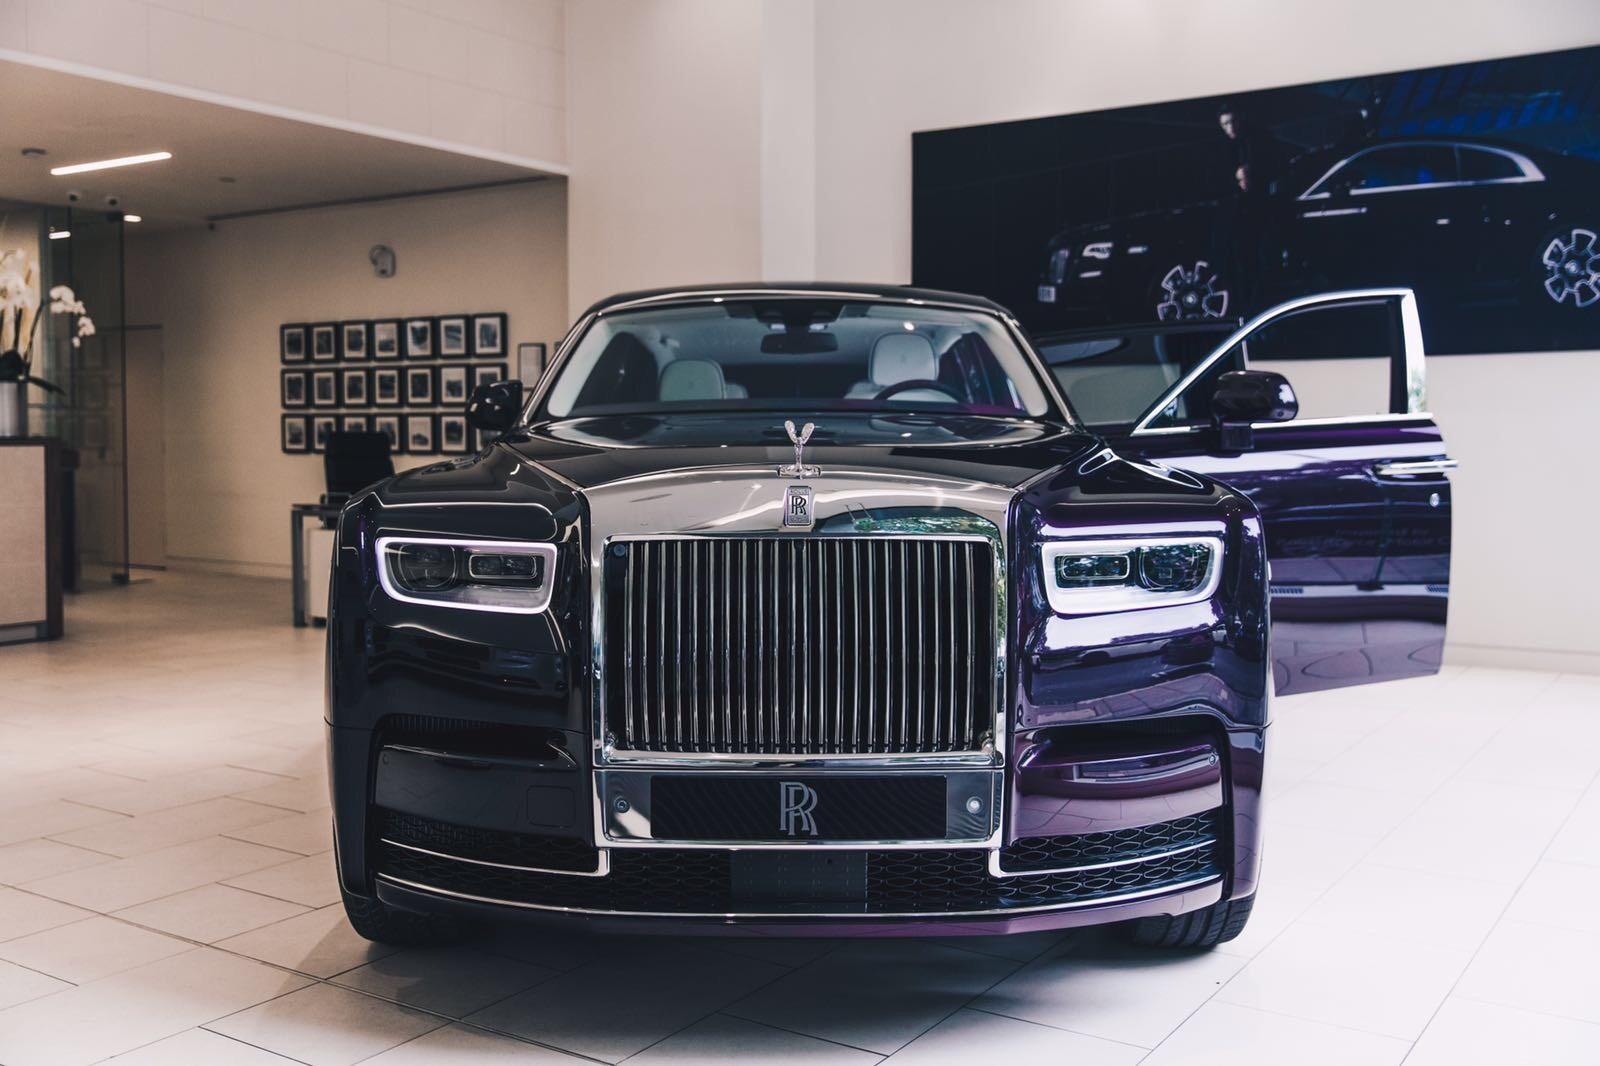 Новый rolls royce. Rolls Royce Phantom 2018. Роллс Ройс Фантом новый. Новый Rolls Royce Phantom 2018. Роллс Ройс Фантом кортеж.